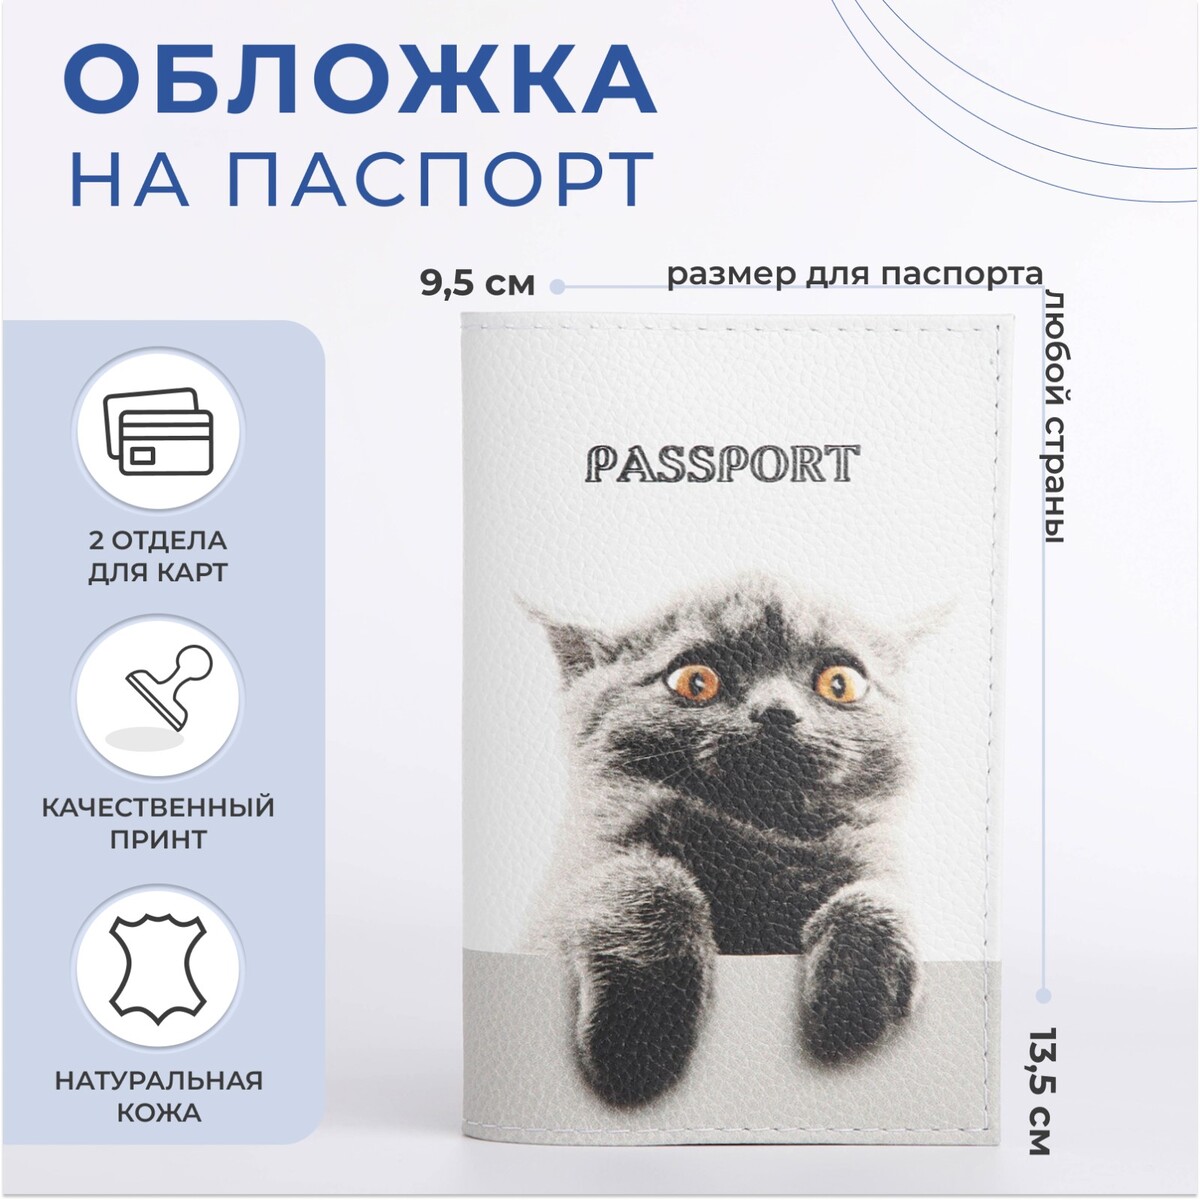 Обложка для паспорта, цвет белый обложка для паспорта белый